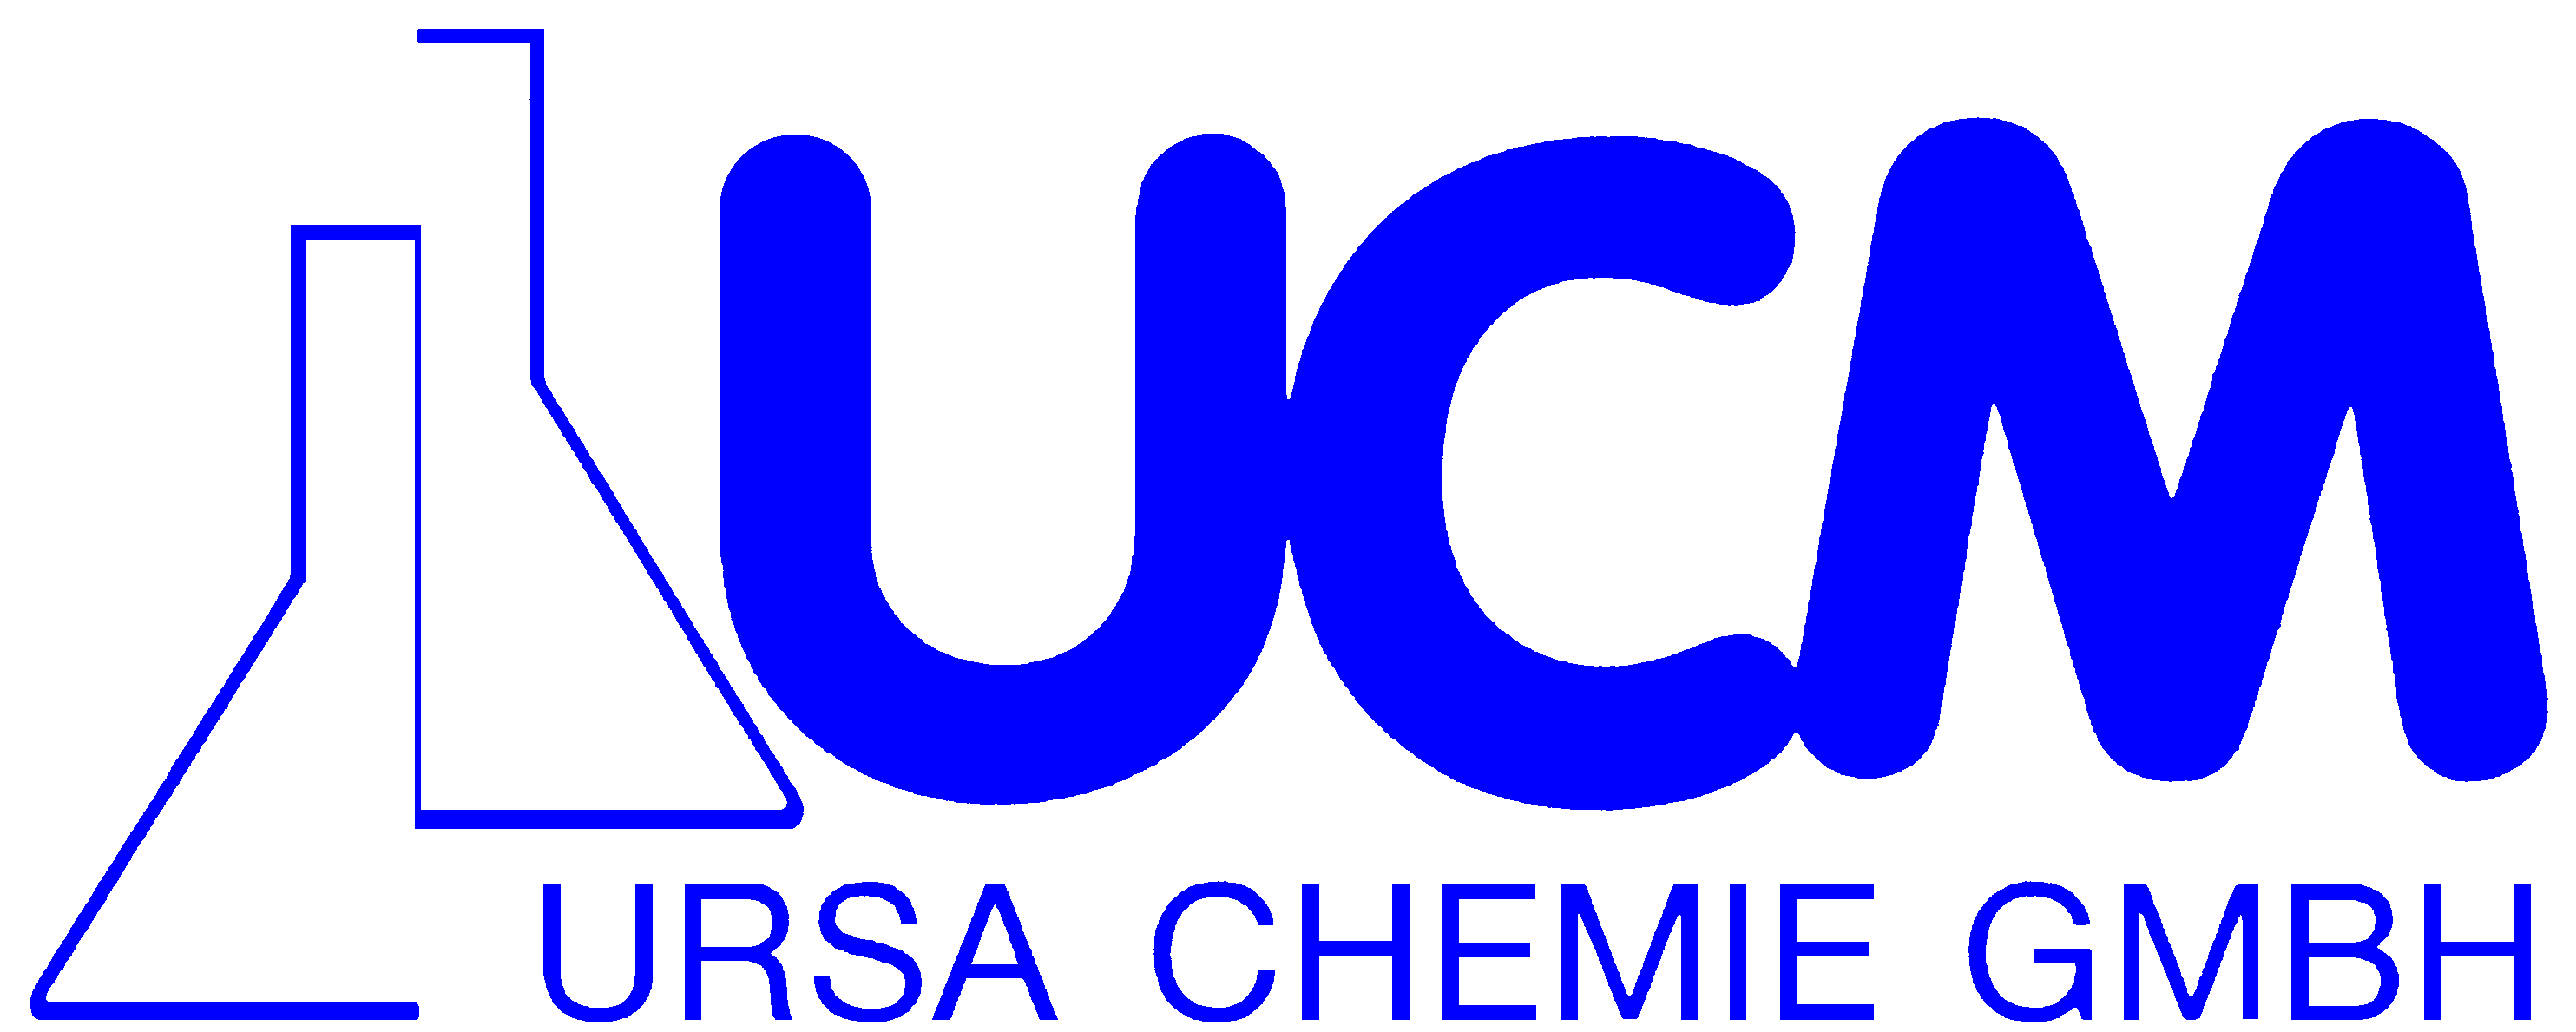 URSA CHEMIE GmbH